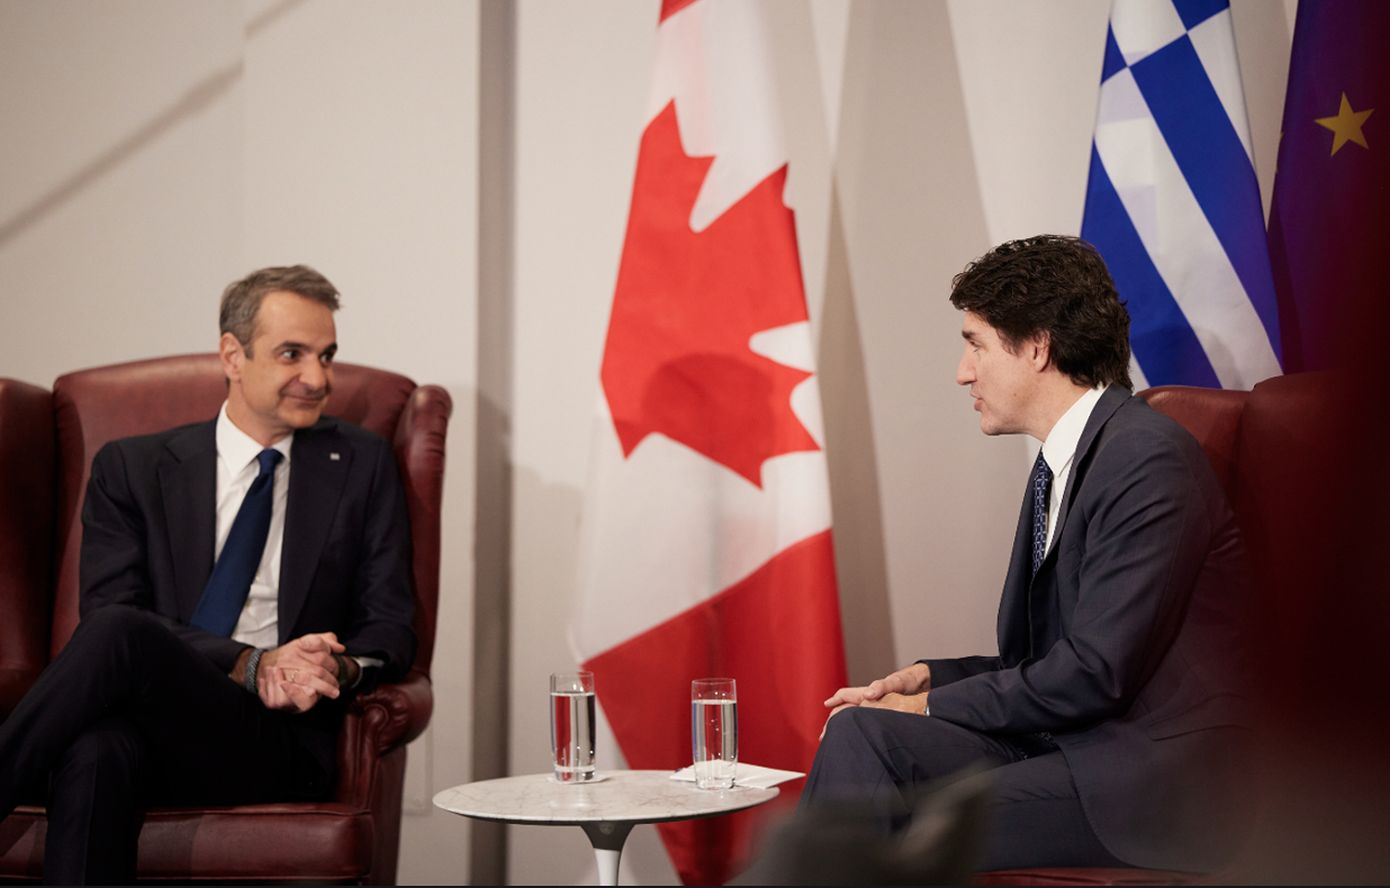 Κοινή δήλωση Μητσοτάκη – Τριντό: Η φιλία Ελλάδας και Καναδά αντανακλάται στους στενούς στρατηγικούς δεσμούς των δύο χωρών